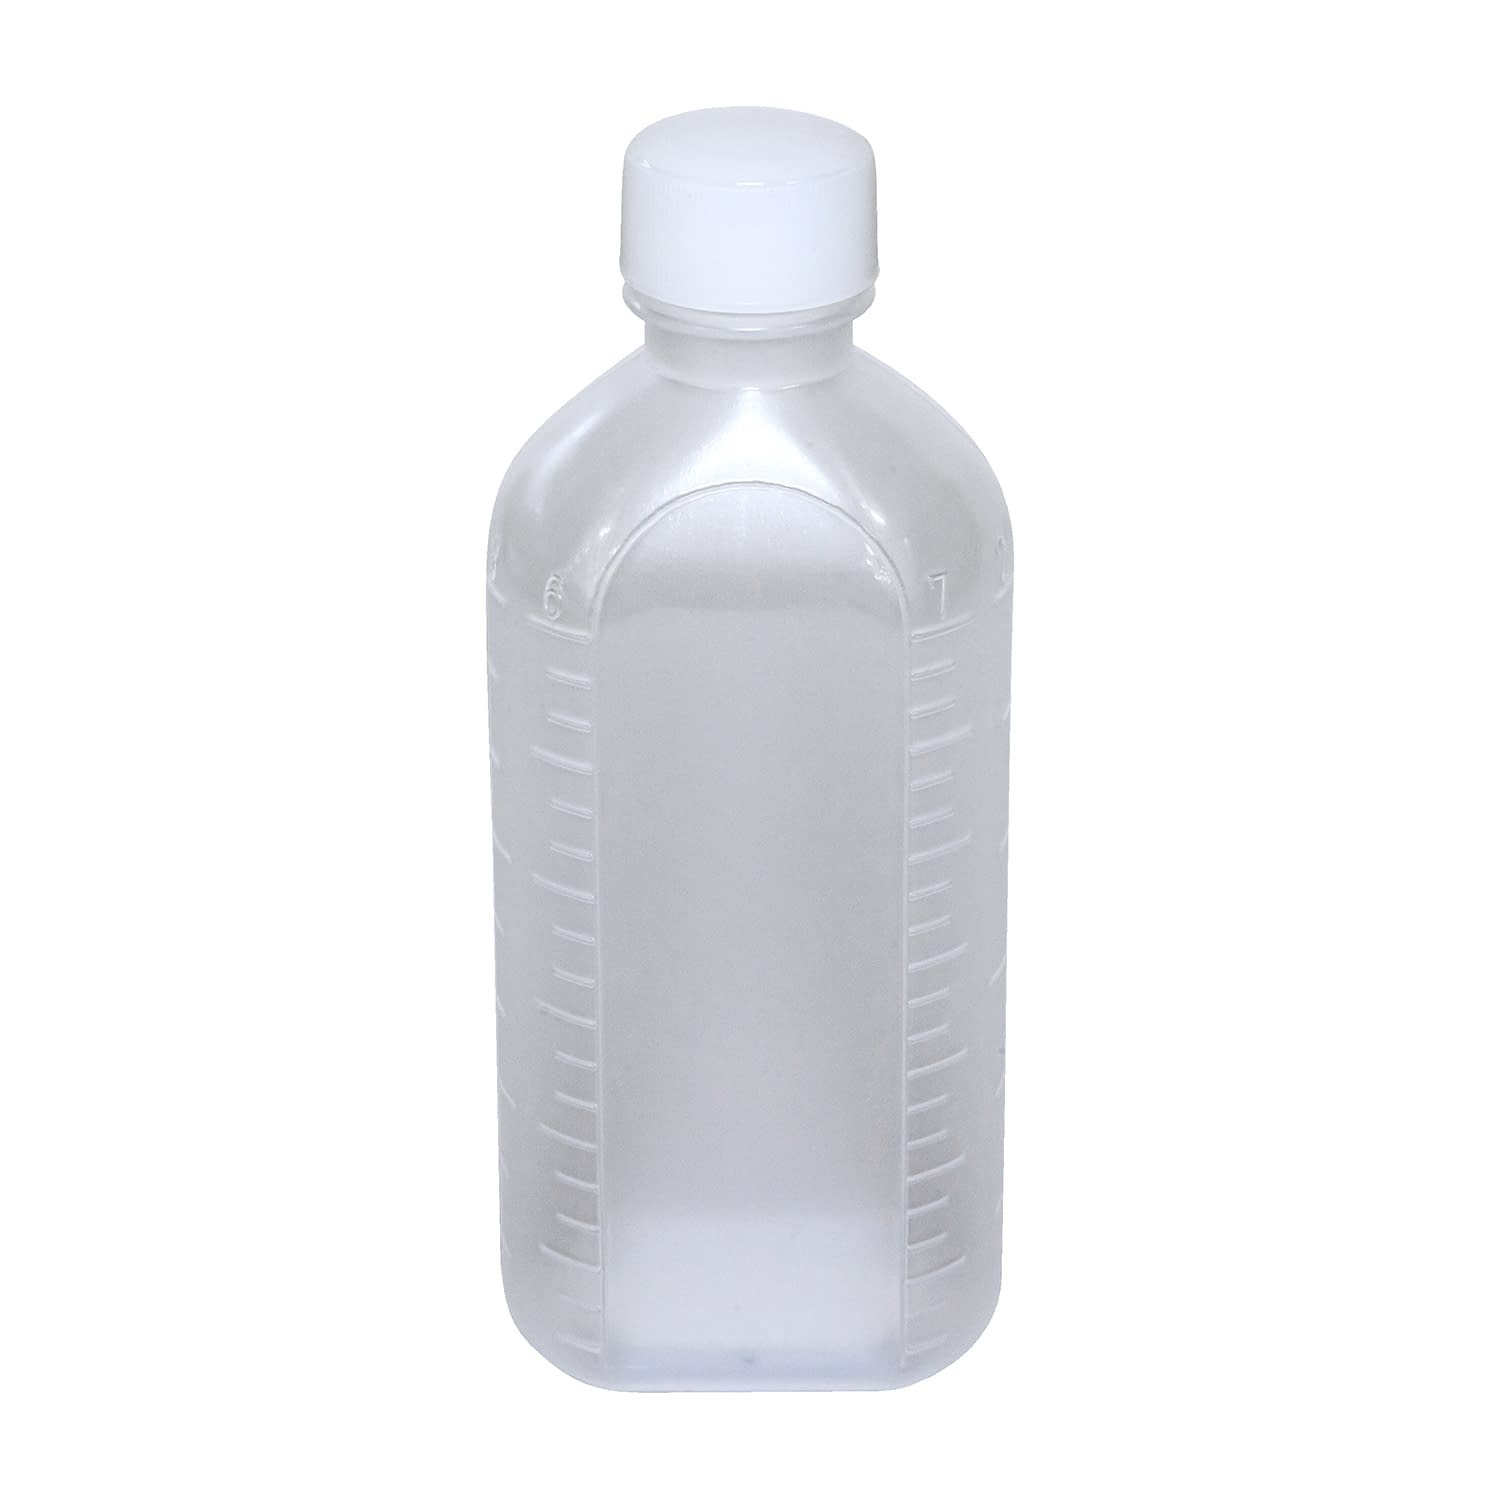 投薬瓶ＰＰＢ（滅菌済） 150CC(5ﾎﾝX30ﾌｸﾛｲﾘ) キャップ：緑150cc緑【エムアイケミカル】FALSE(08-2855-04-03)